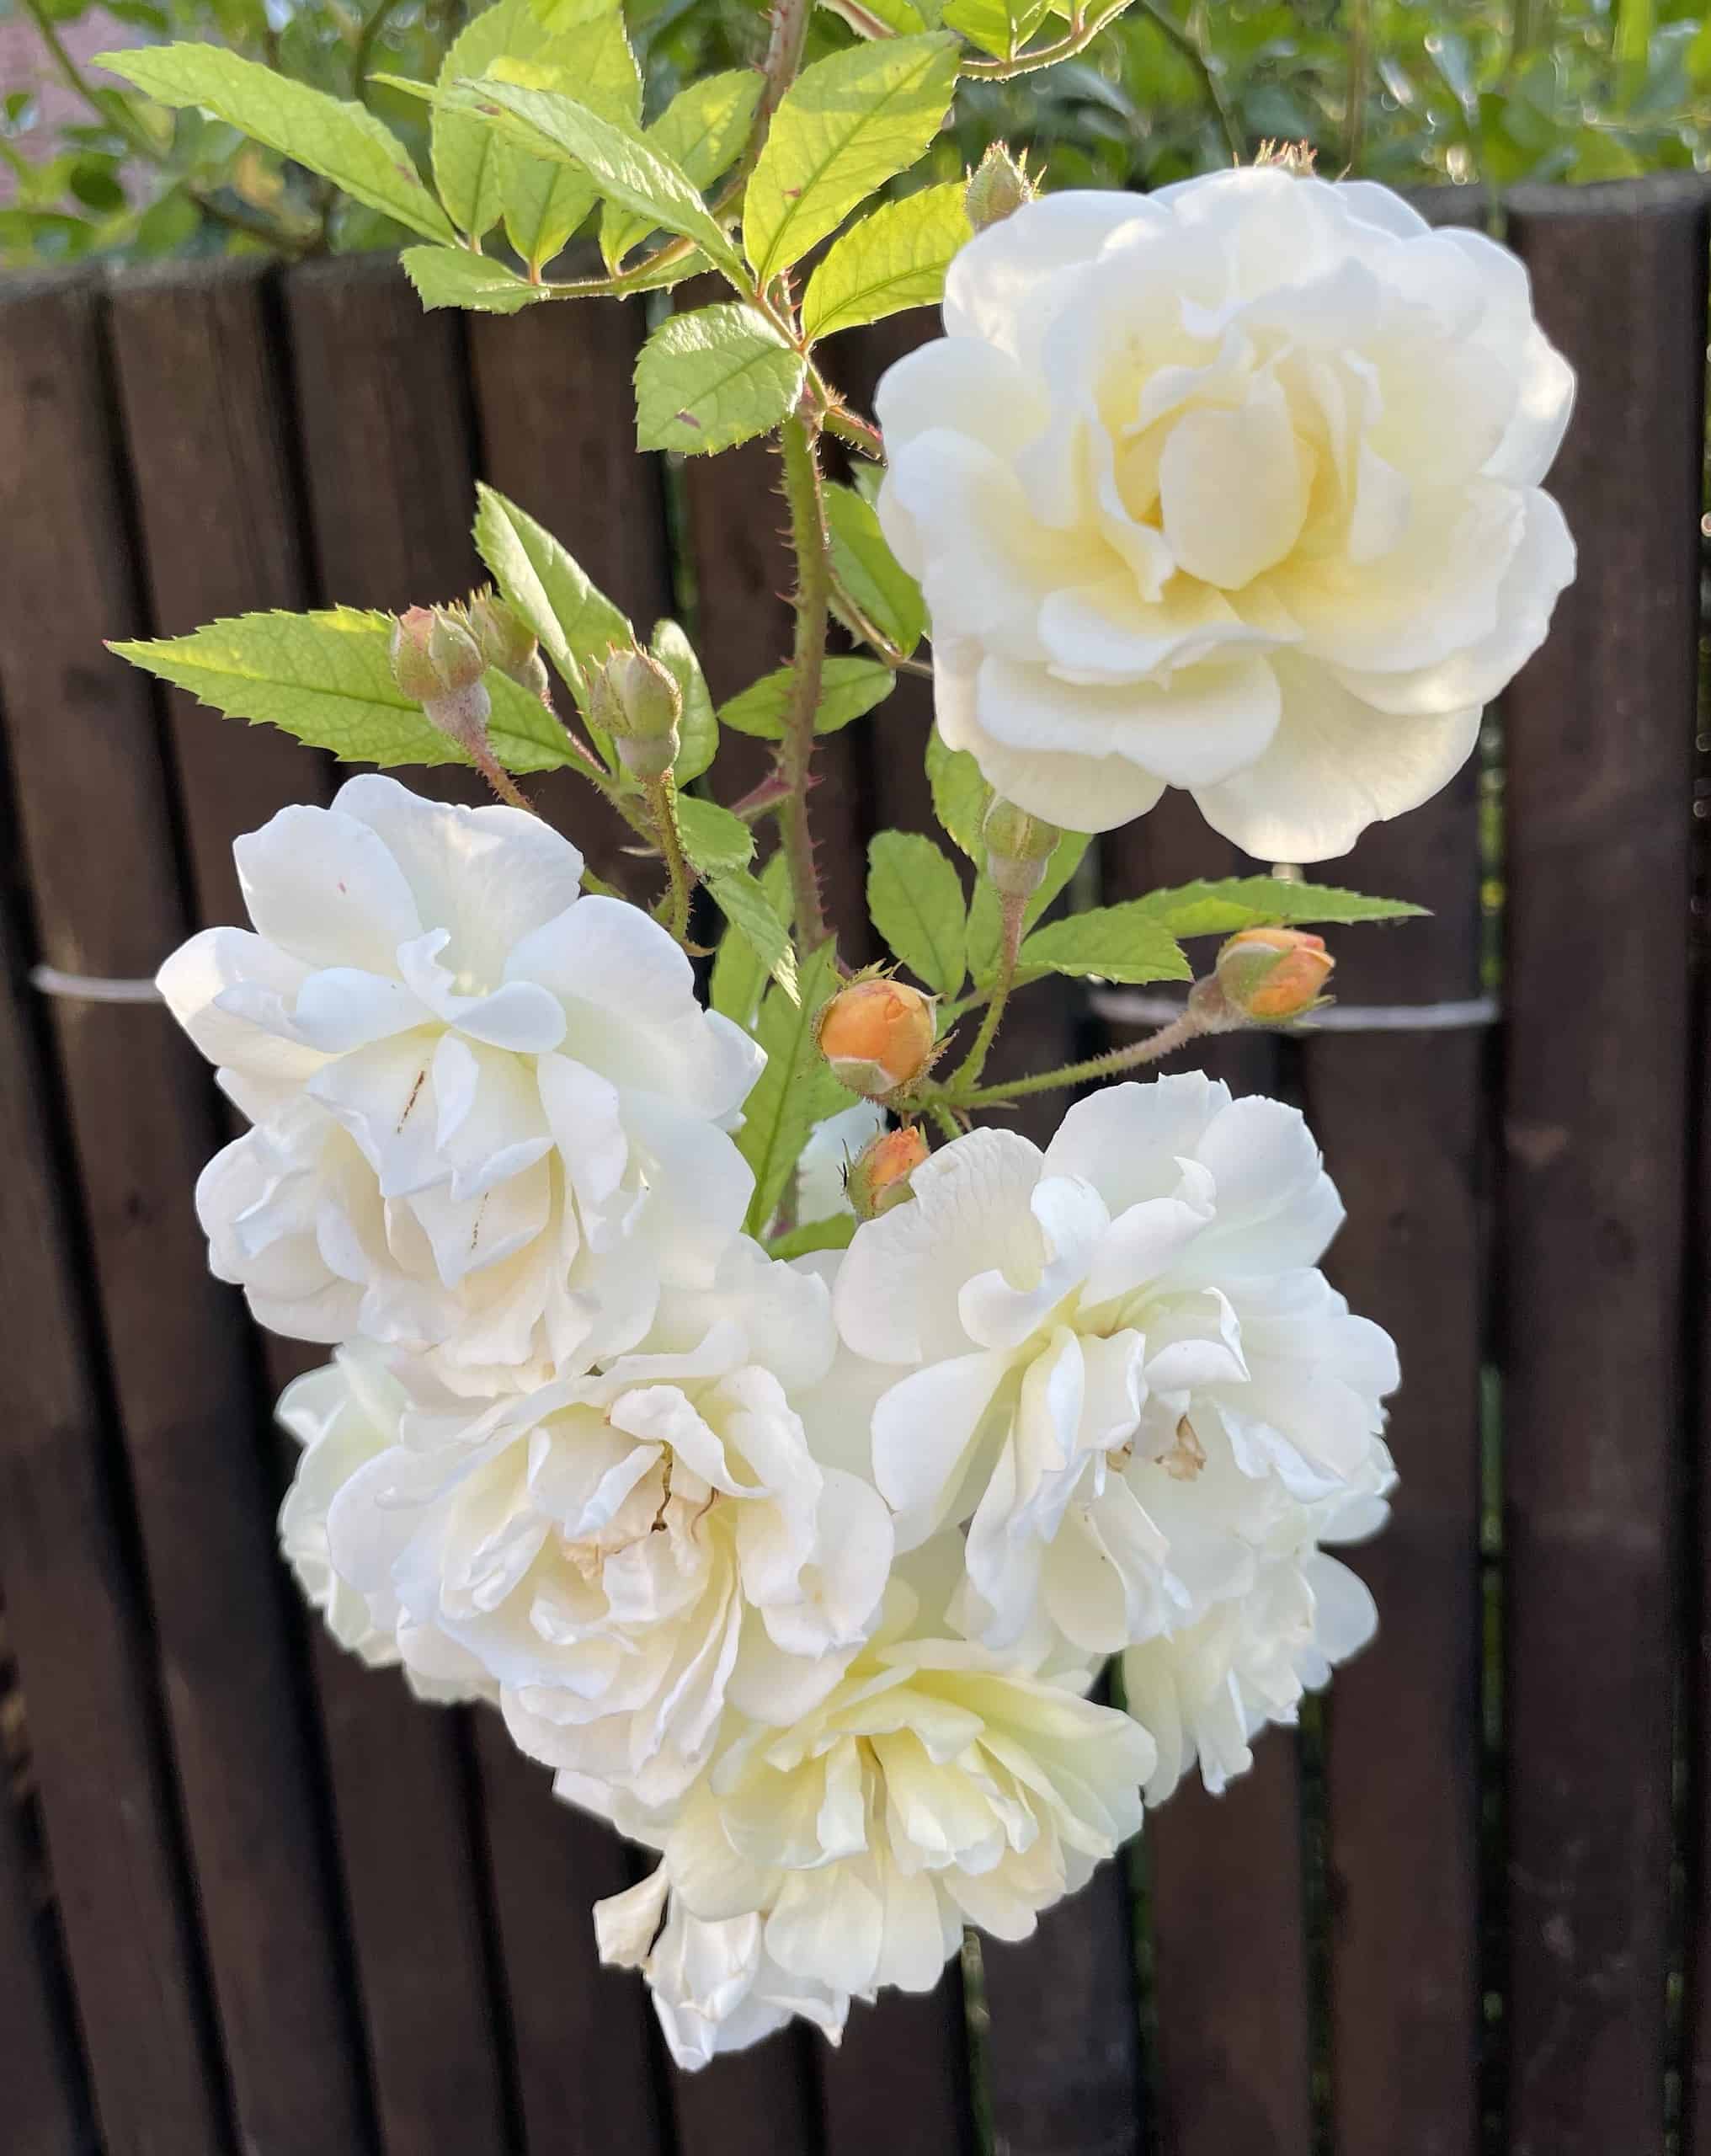 Büschel weiße Rosen am Steauch vor braunen Holzzaun.